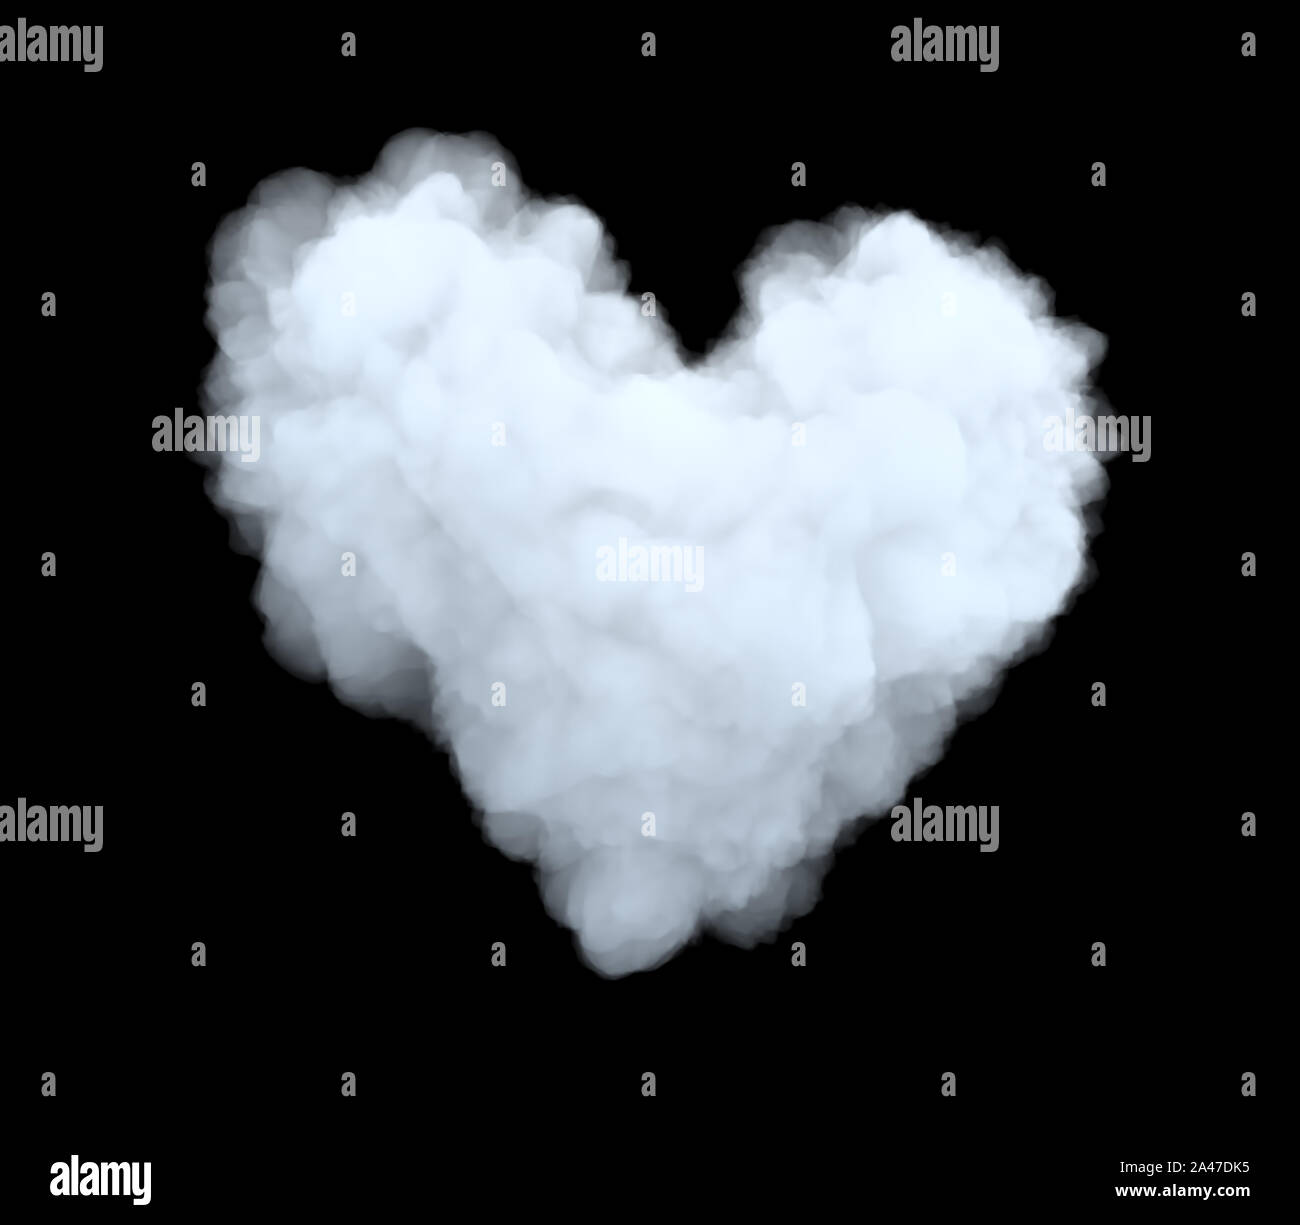 3D-Rendering von einer weißen sperrige cumulus Cloud in Form von Herzen auf einem schwarzen Hintergrund. Wetter und Klima. Natürliche Phänomene. Wetter Beobachtungen. Stockfoto